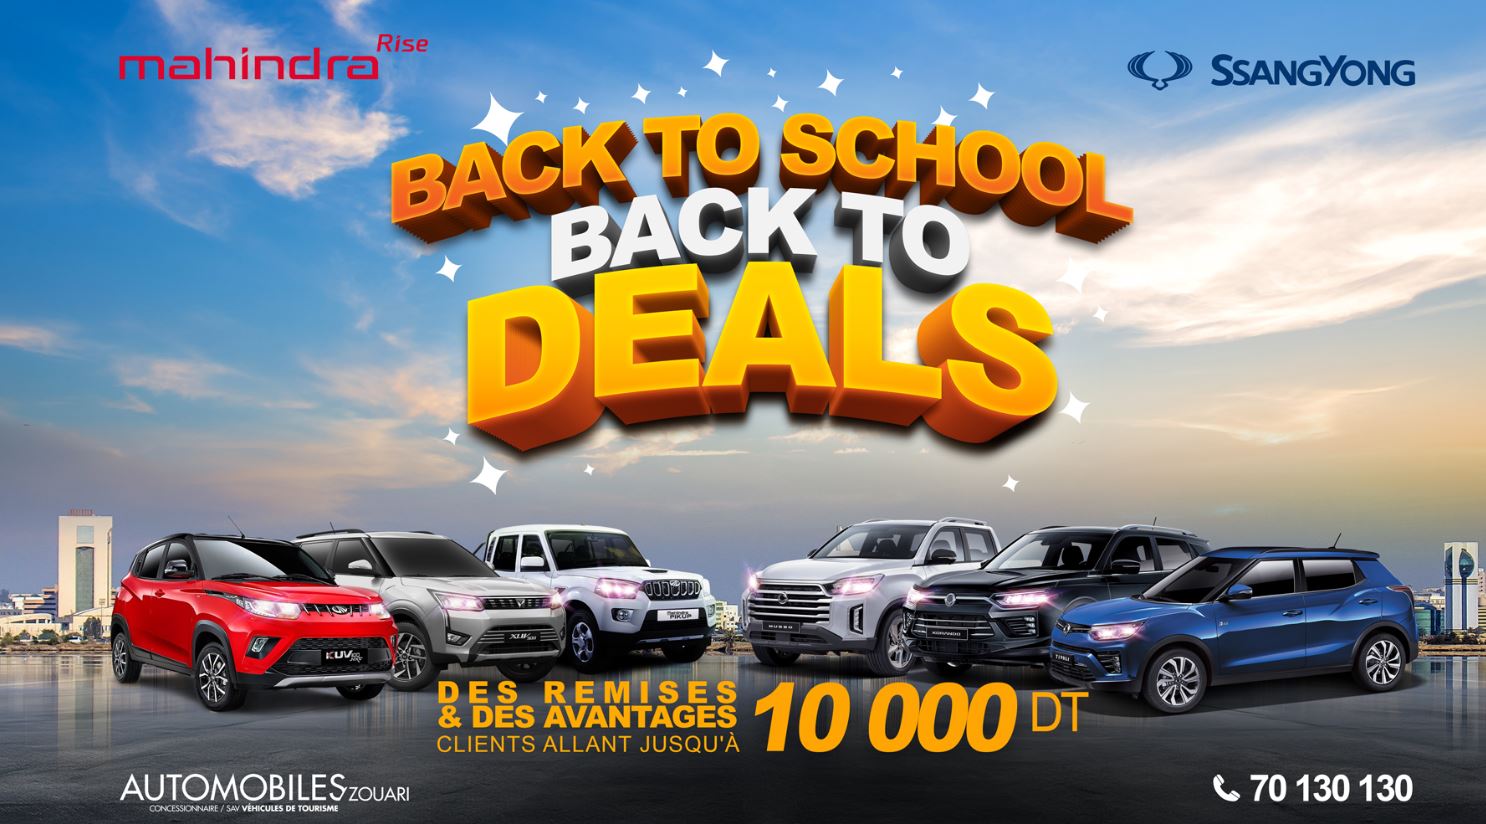 À l’occasion de la rentrée scolaire Zouari Automobile, lance une offre promotionnelle spéciale “Back to School, Back to Deals”.